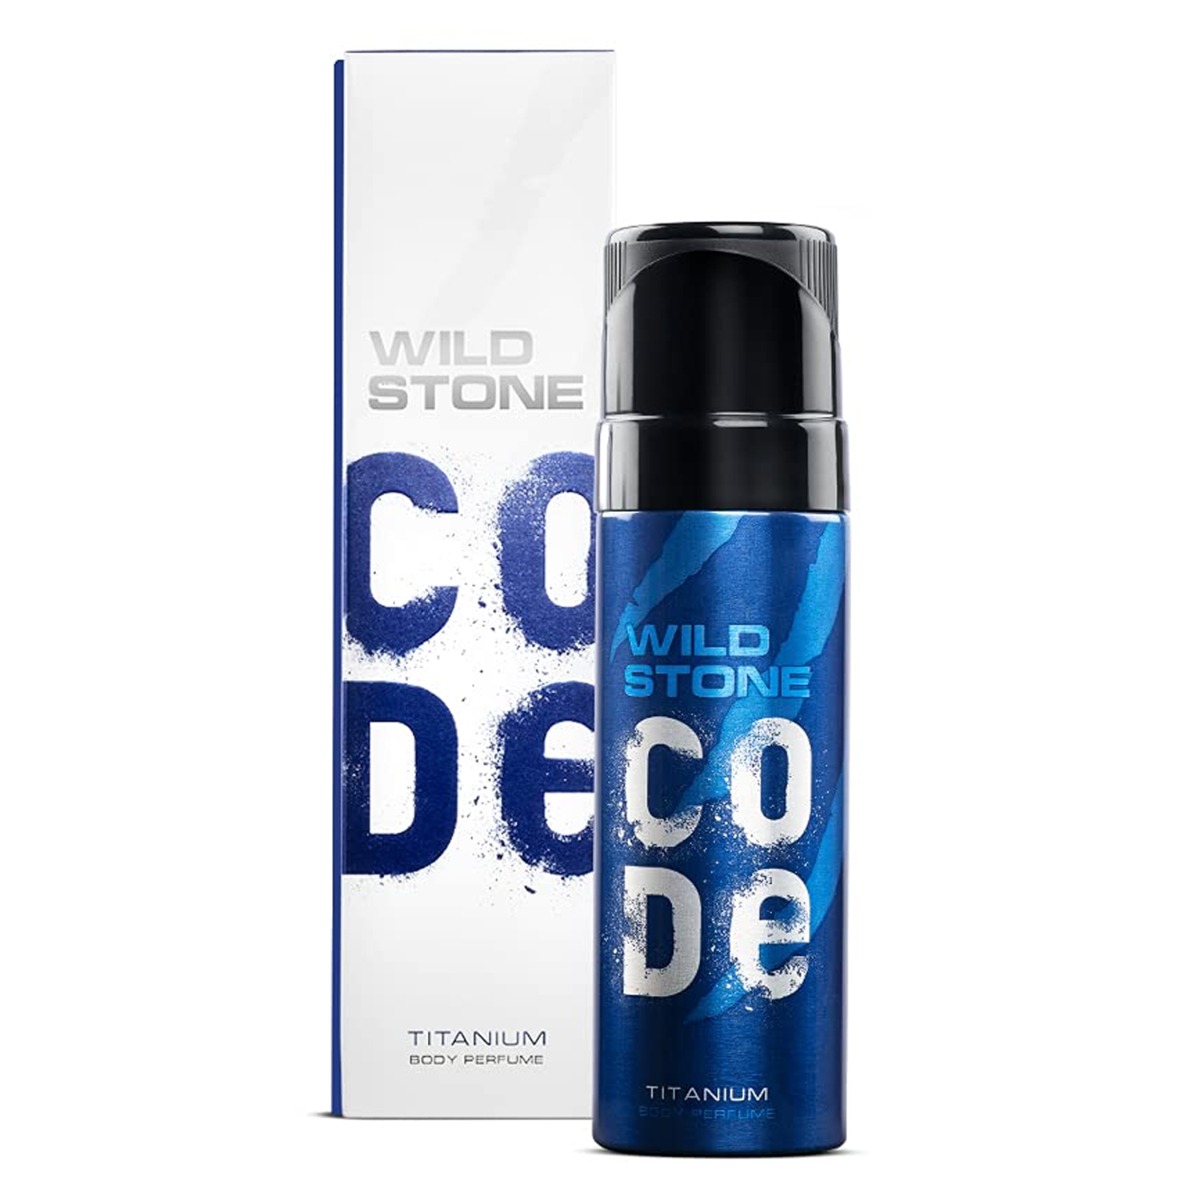 Wild Stone Code Titanium Perfume Body Spray, 120ml